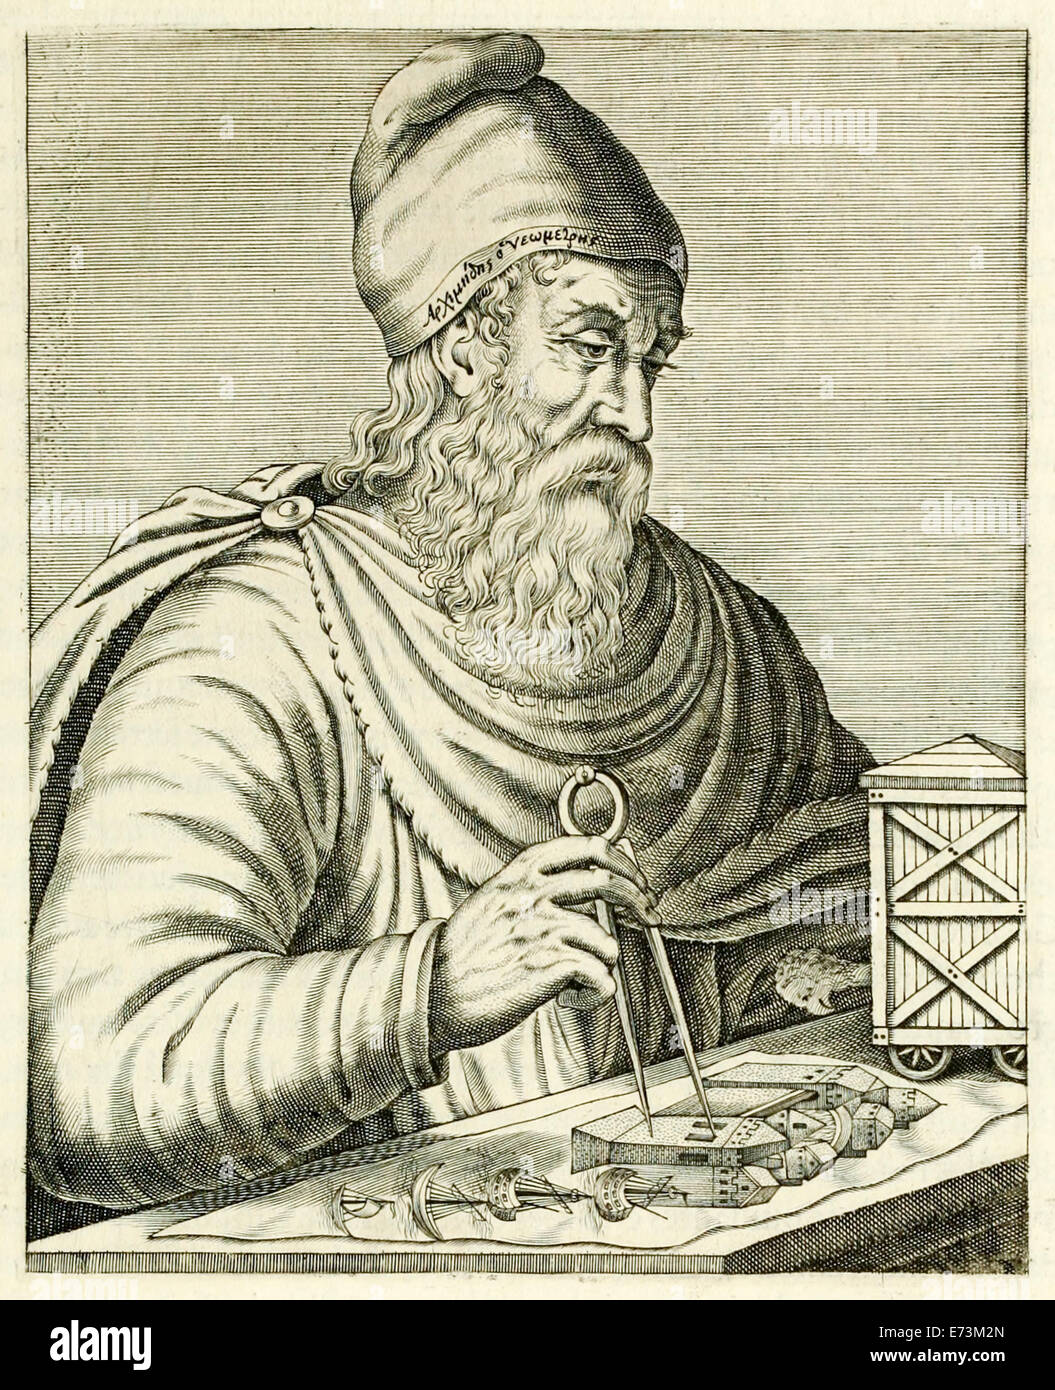 Archimede di Siracusa (287-212BC) Greco antico matematico, fisico, ingegnere, inventore e astronomo dal "vero ritratti…" da André Thévet pubblicato nel 1594. Vedere la descrizione per maggiori informazioni. Foto Stock